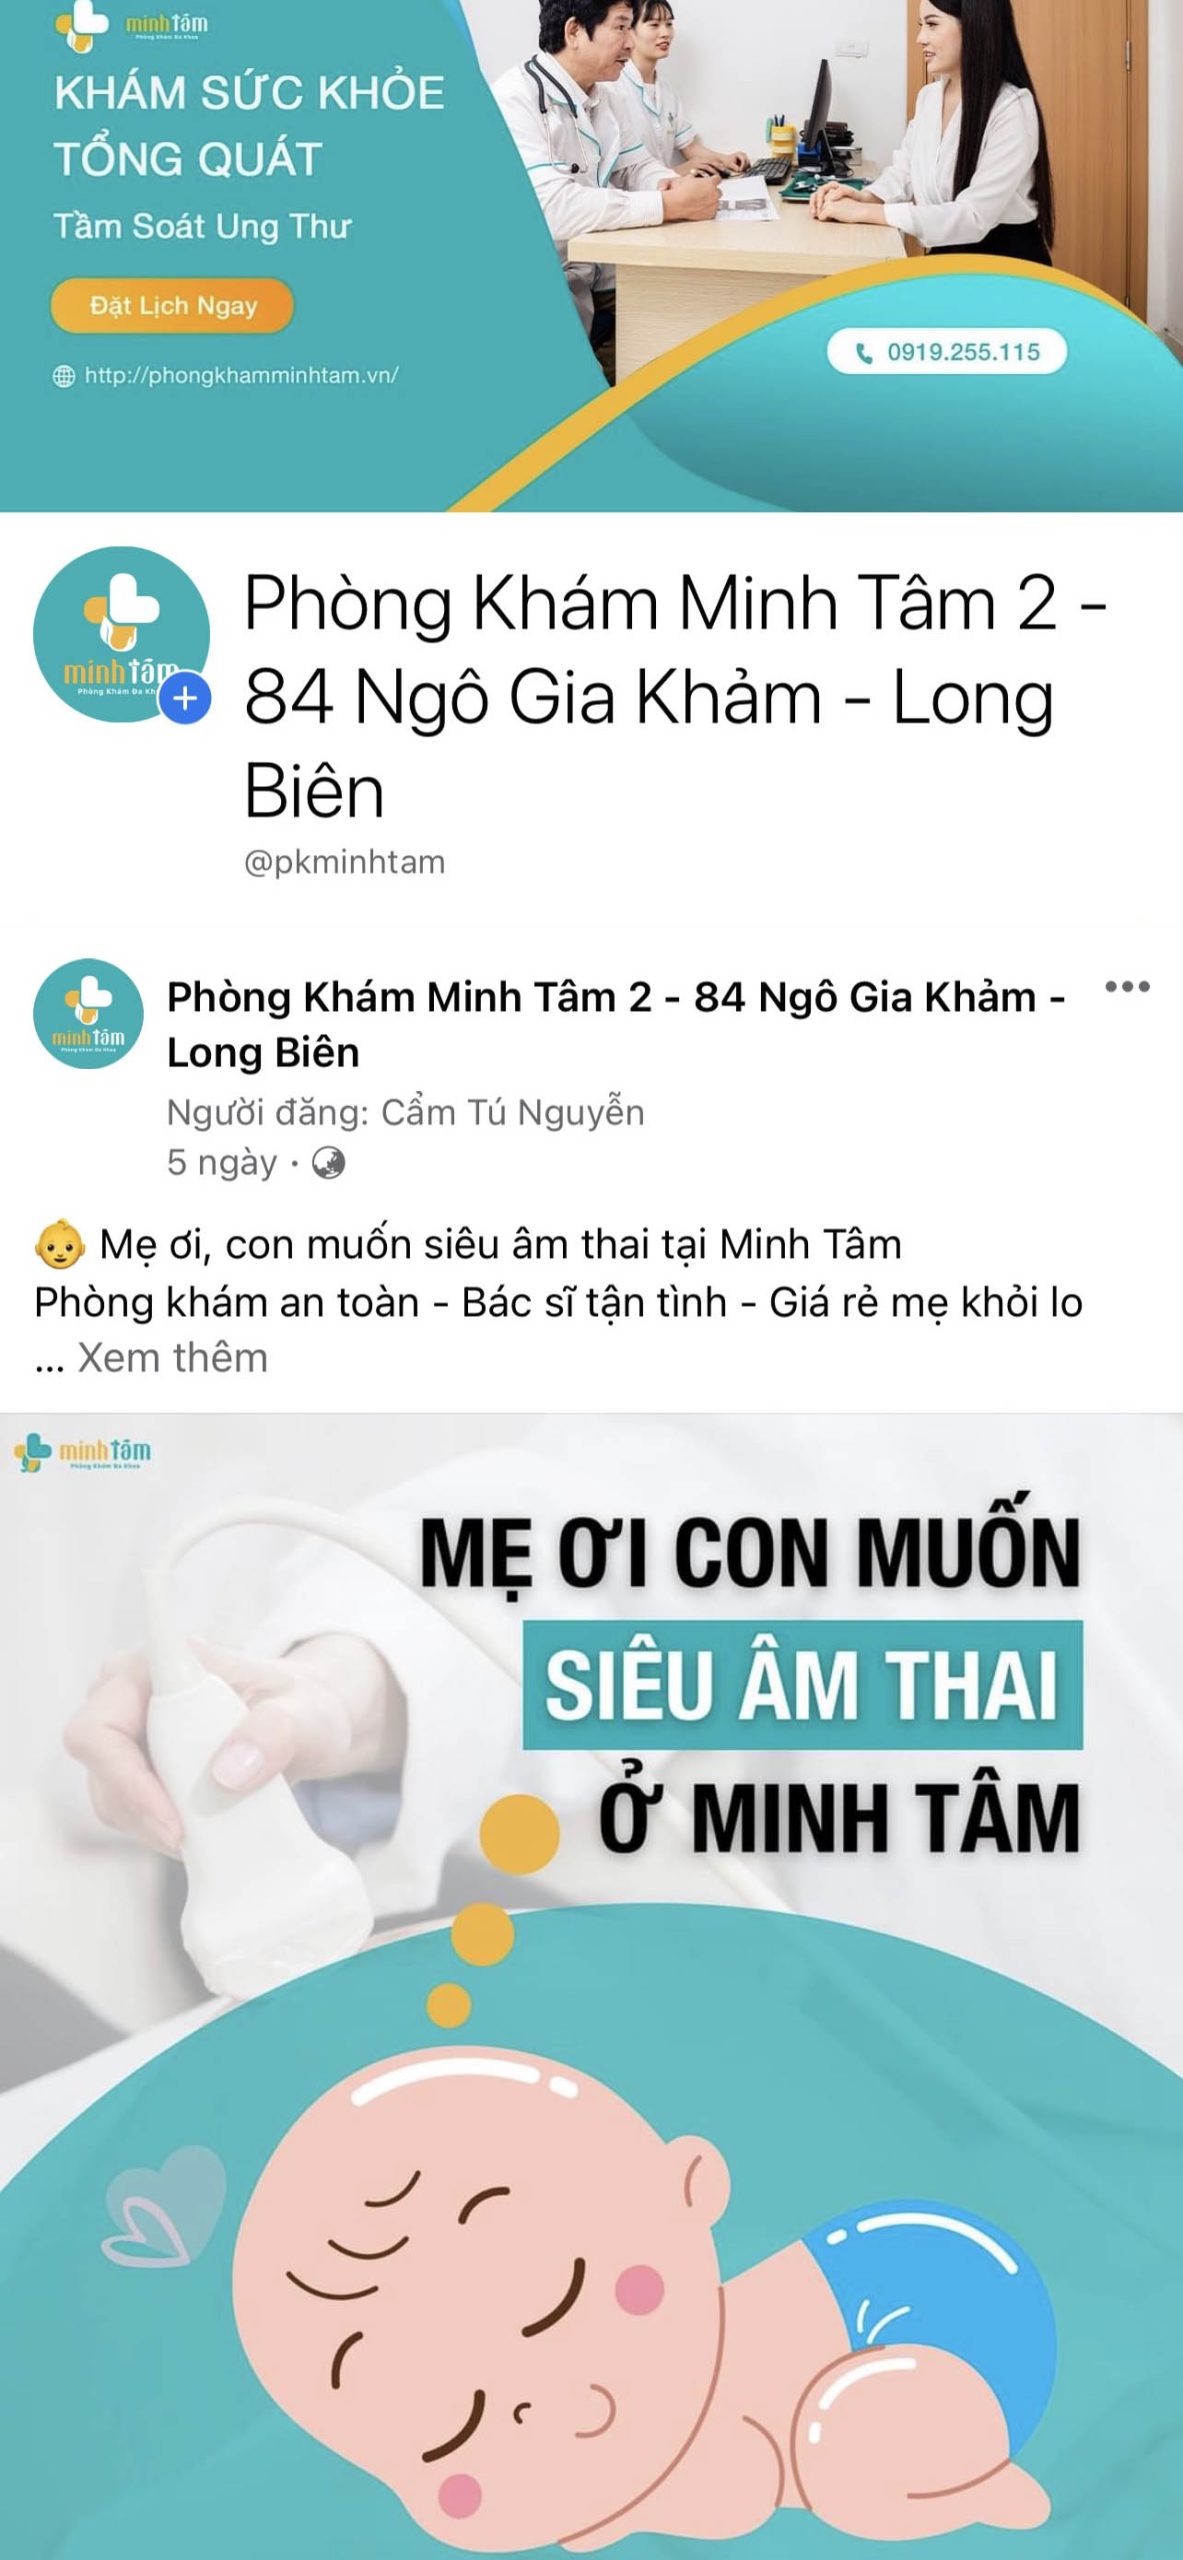 du-an-Digital-Marketing-Phong-kham-da-kho-minh-tam